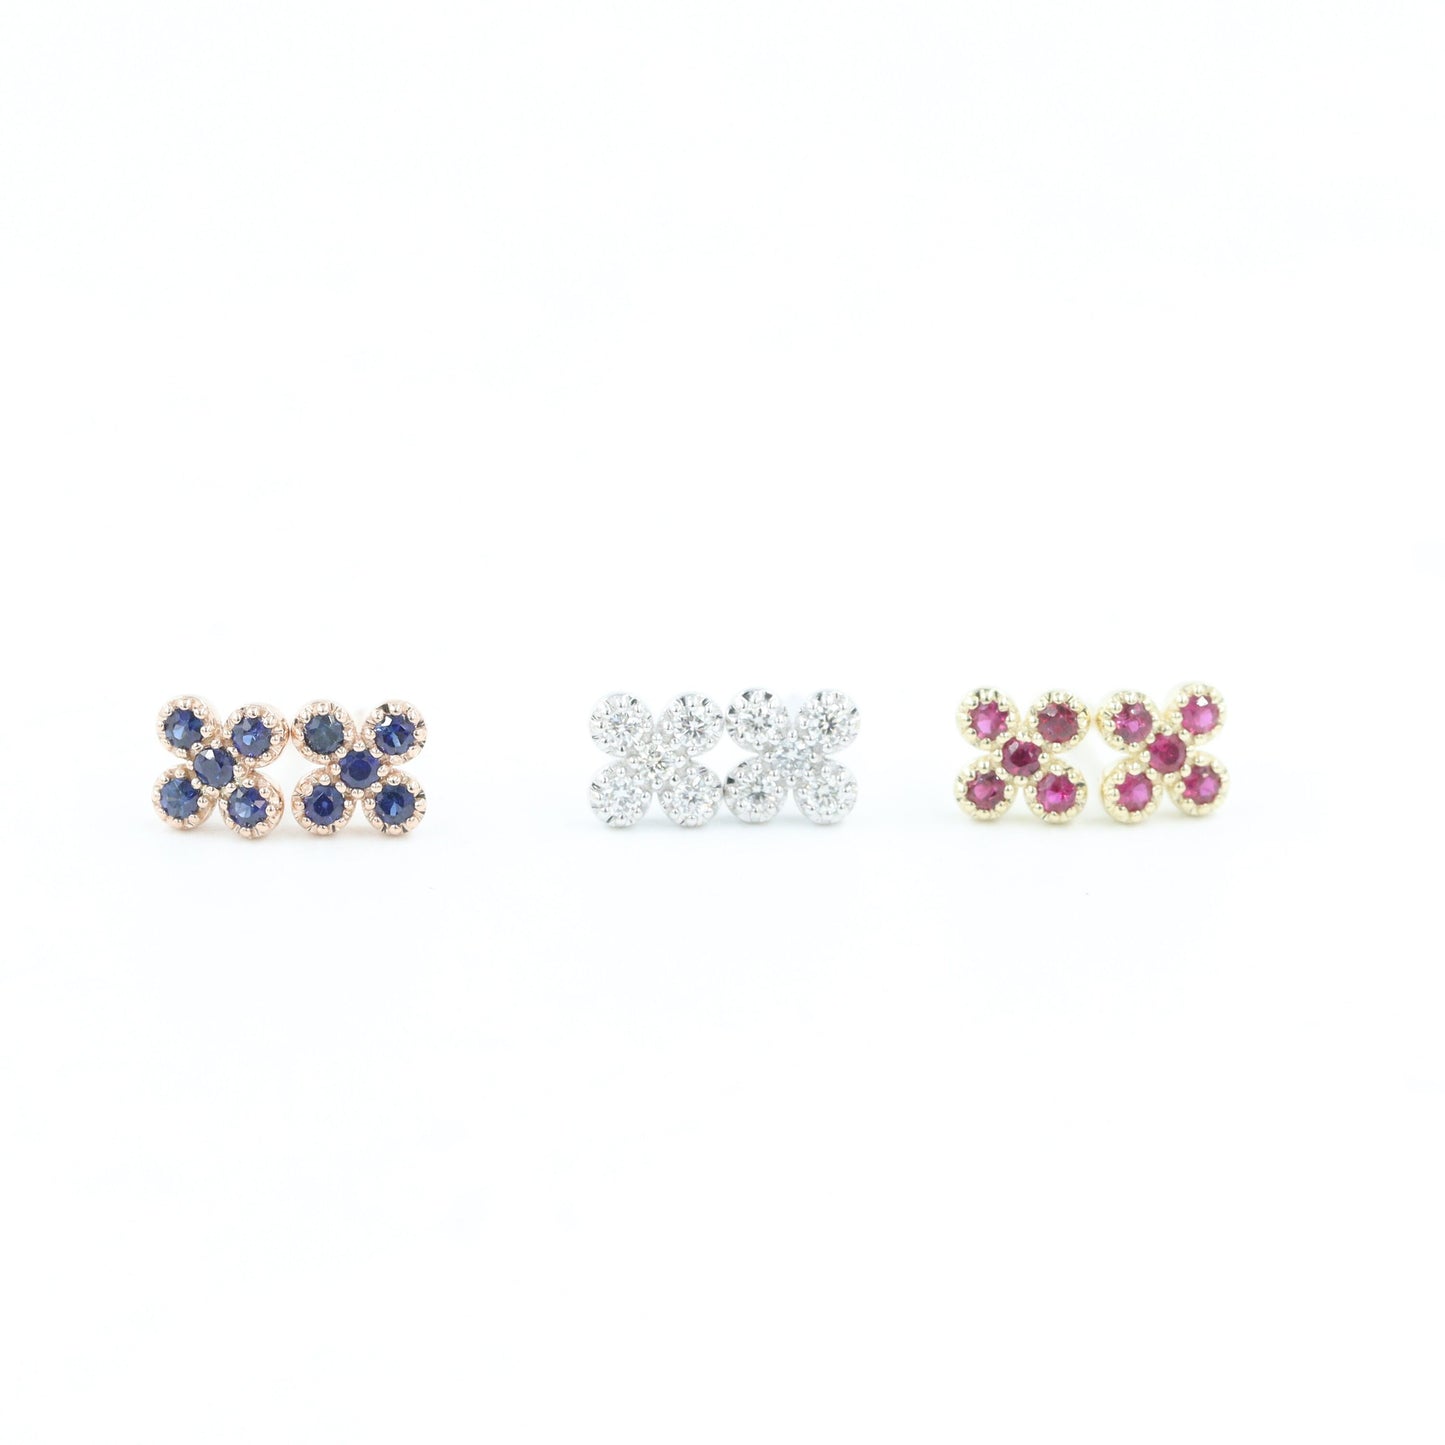 Natural Diamond, Sapphire, Ruby / 14K Gold Flower Stud Earrings / Anniversary gift  Gift for her / Flower Stud Earrings